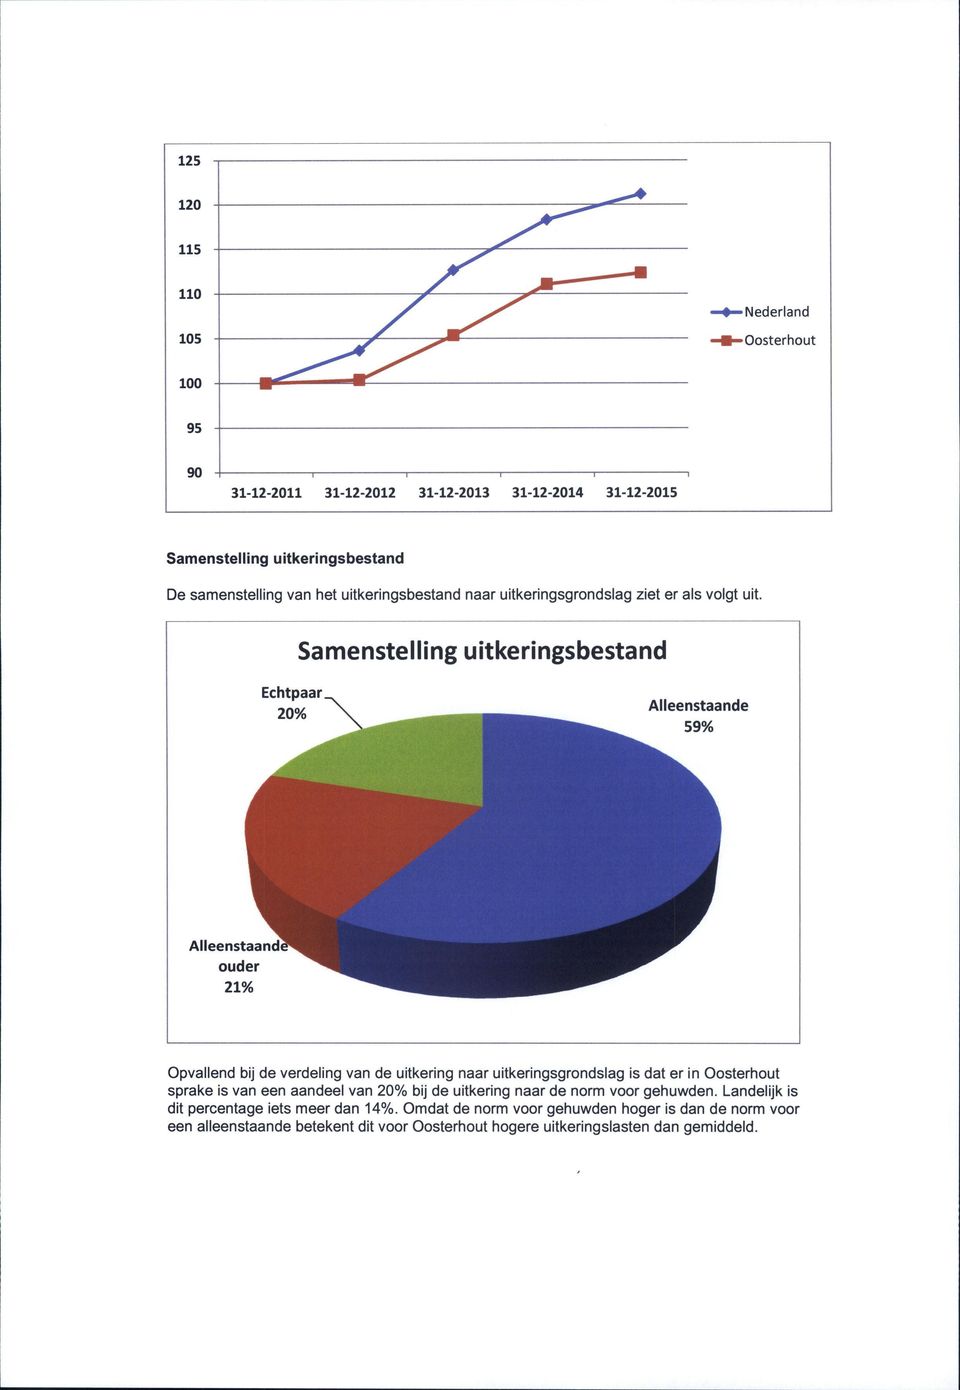 20% Alleenstaande 59X Alleenstaande ouder 21Vo Opvallend bij de verdeling van de uitkering naar uitkeringsgrondslag is dat er in Oosterhout sprake is van een aandeel van